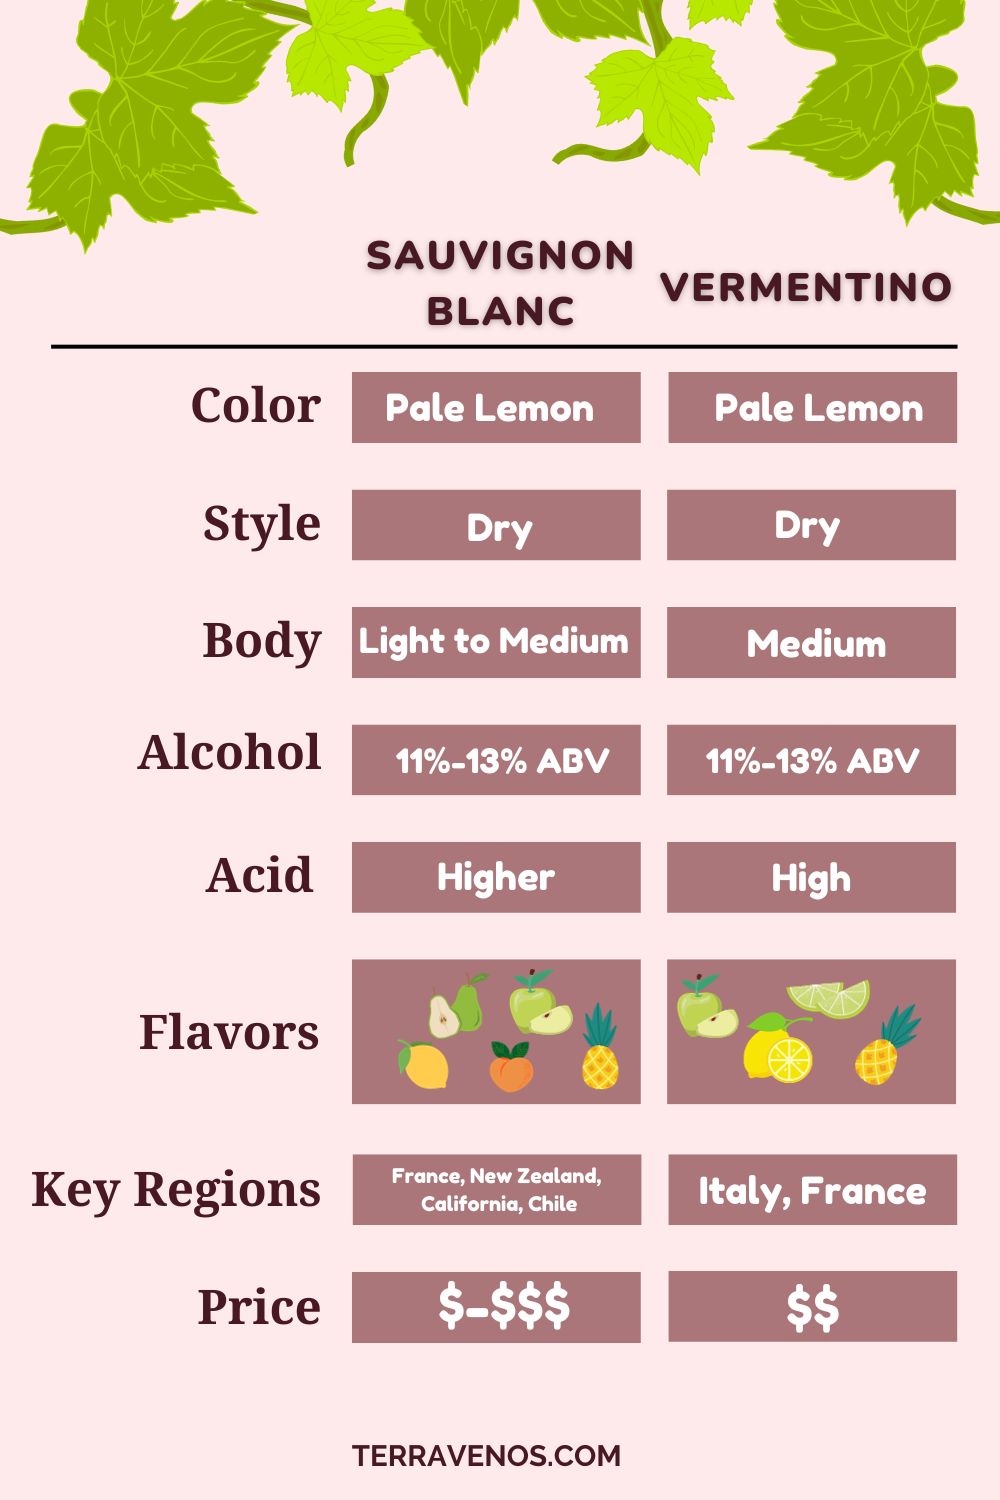 vermentino vs sauvignon blanc wine comparison infographic